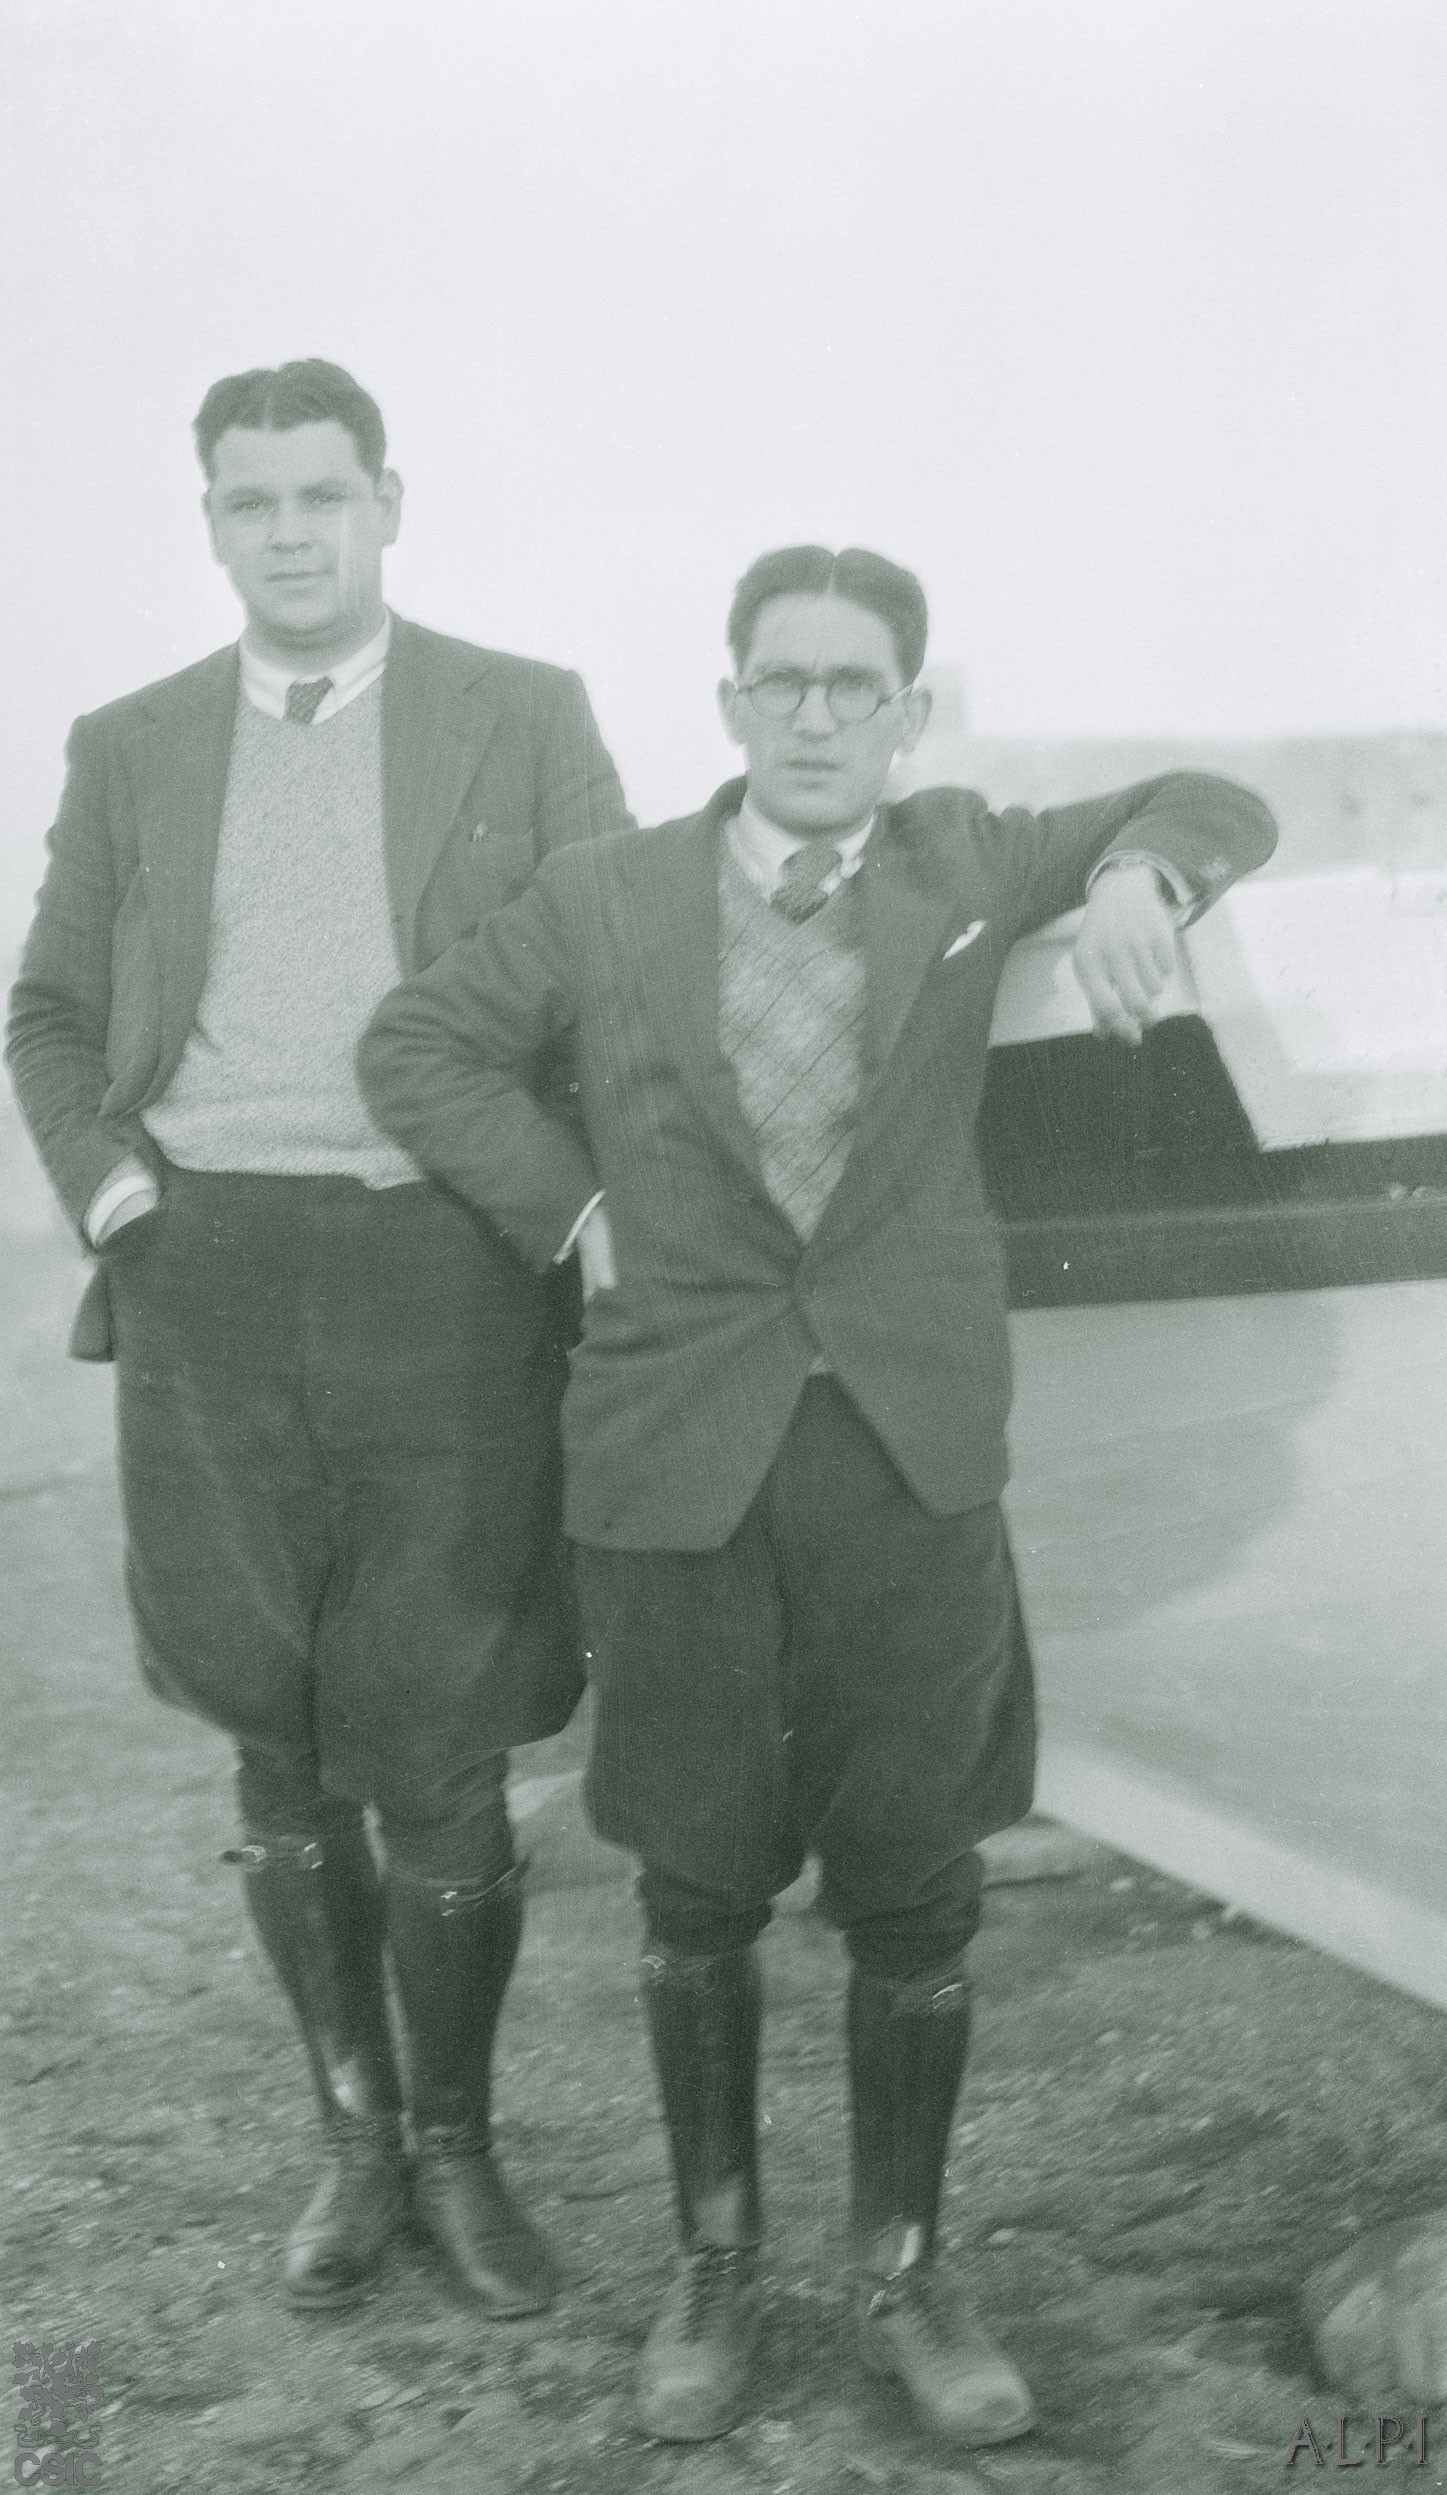 Lorenzo Rodríguez-Castellano and Aurelio Espinosa hijo